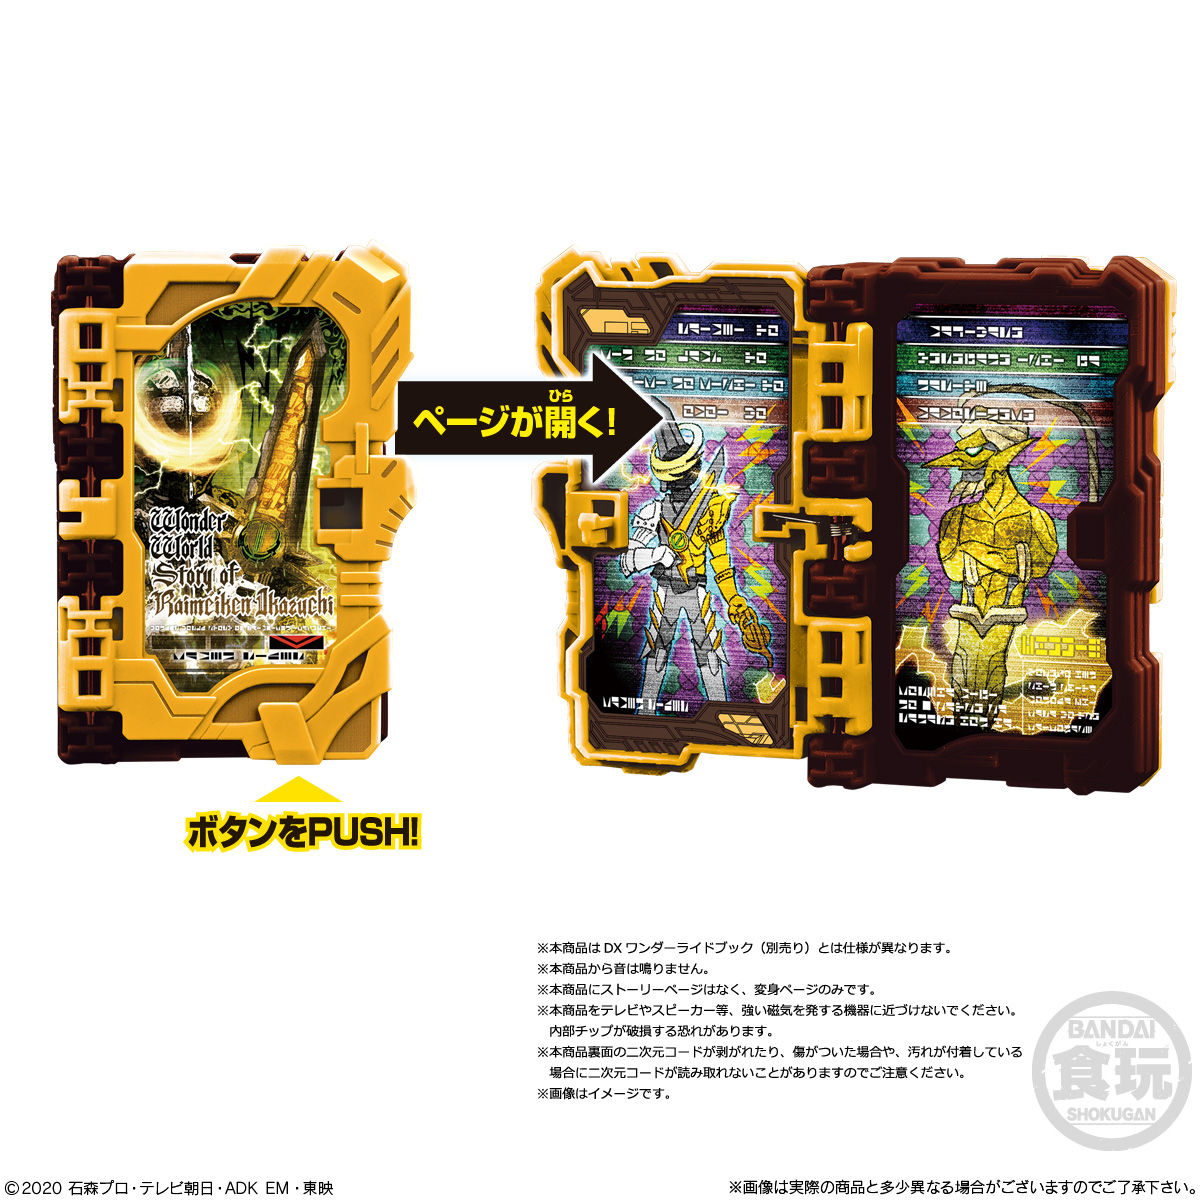 【食玩】仮面ライダーセイバー『コレクタブルワンダーライドブック SG06』8個入りBOX-008